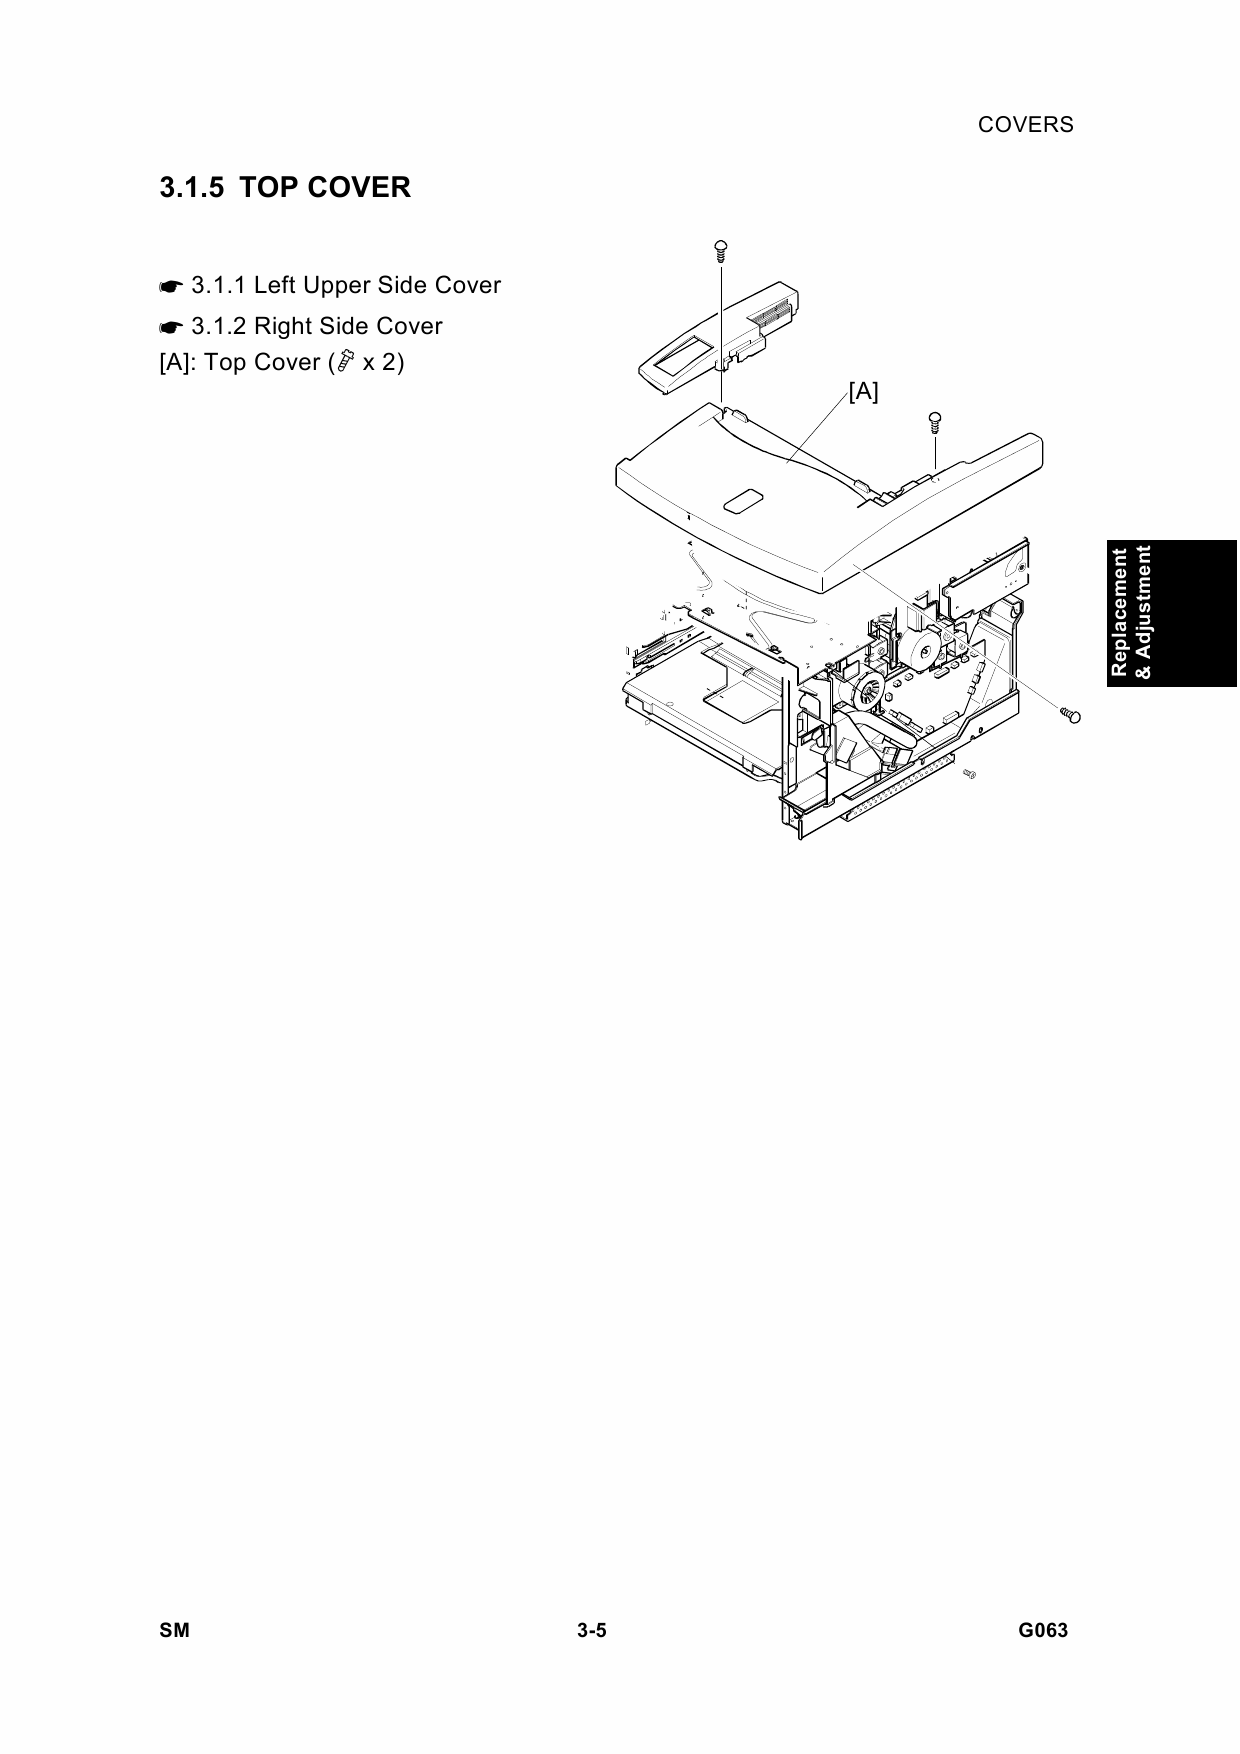 RICOH Aficio AP-206 G063 Parts Service Manual-3